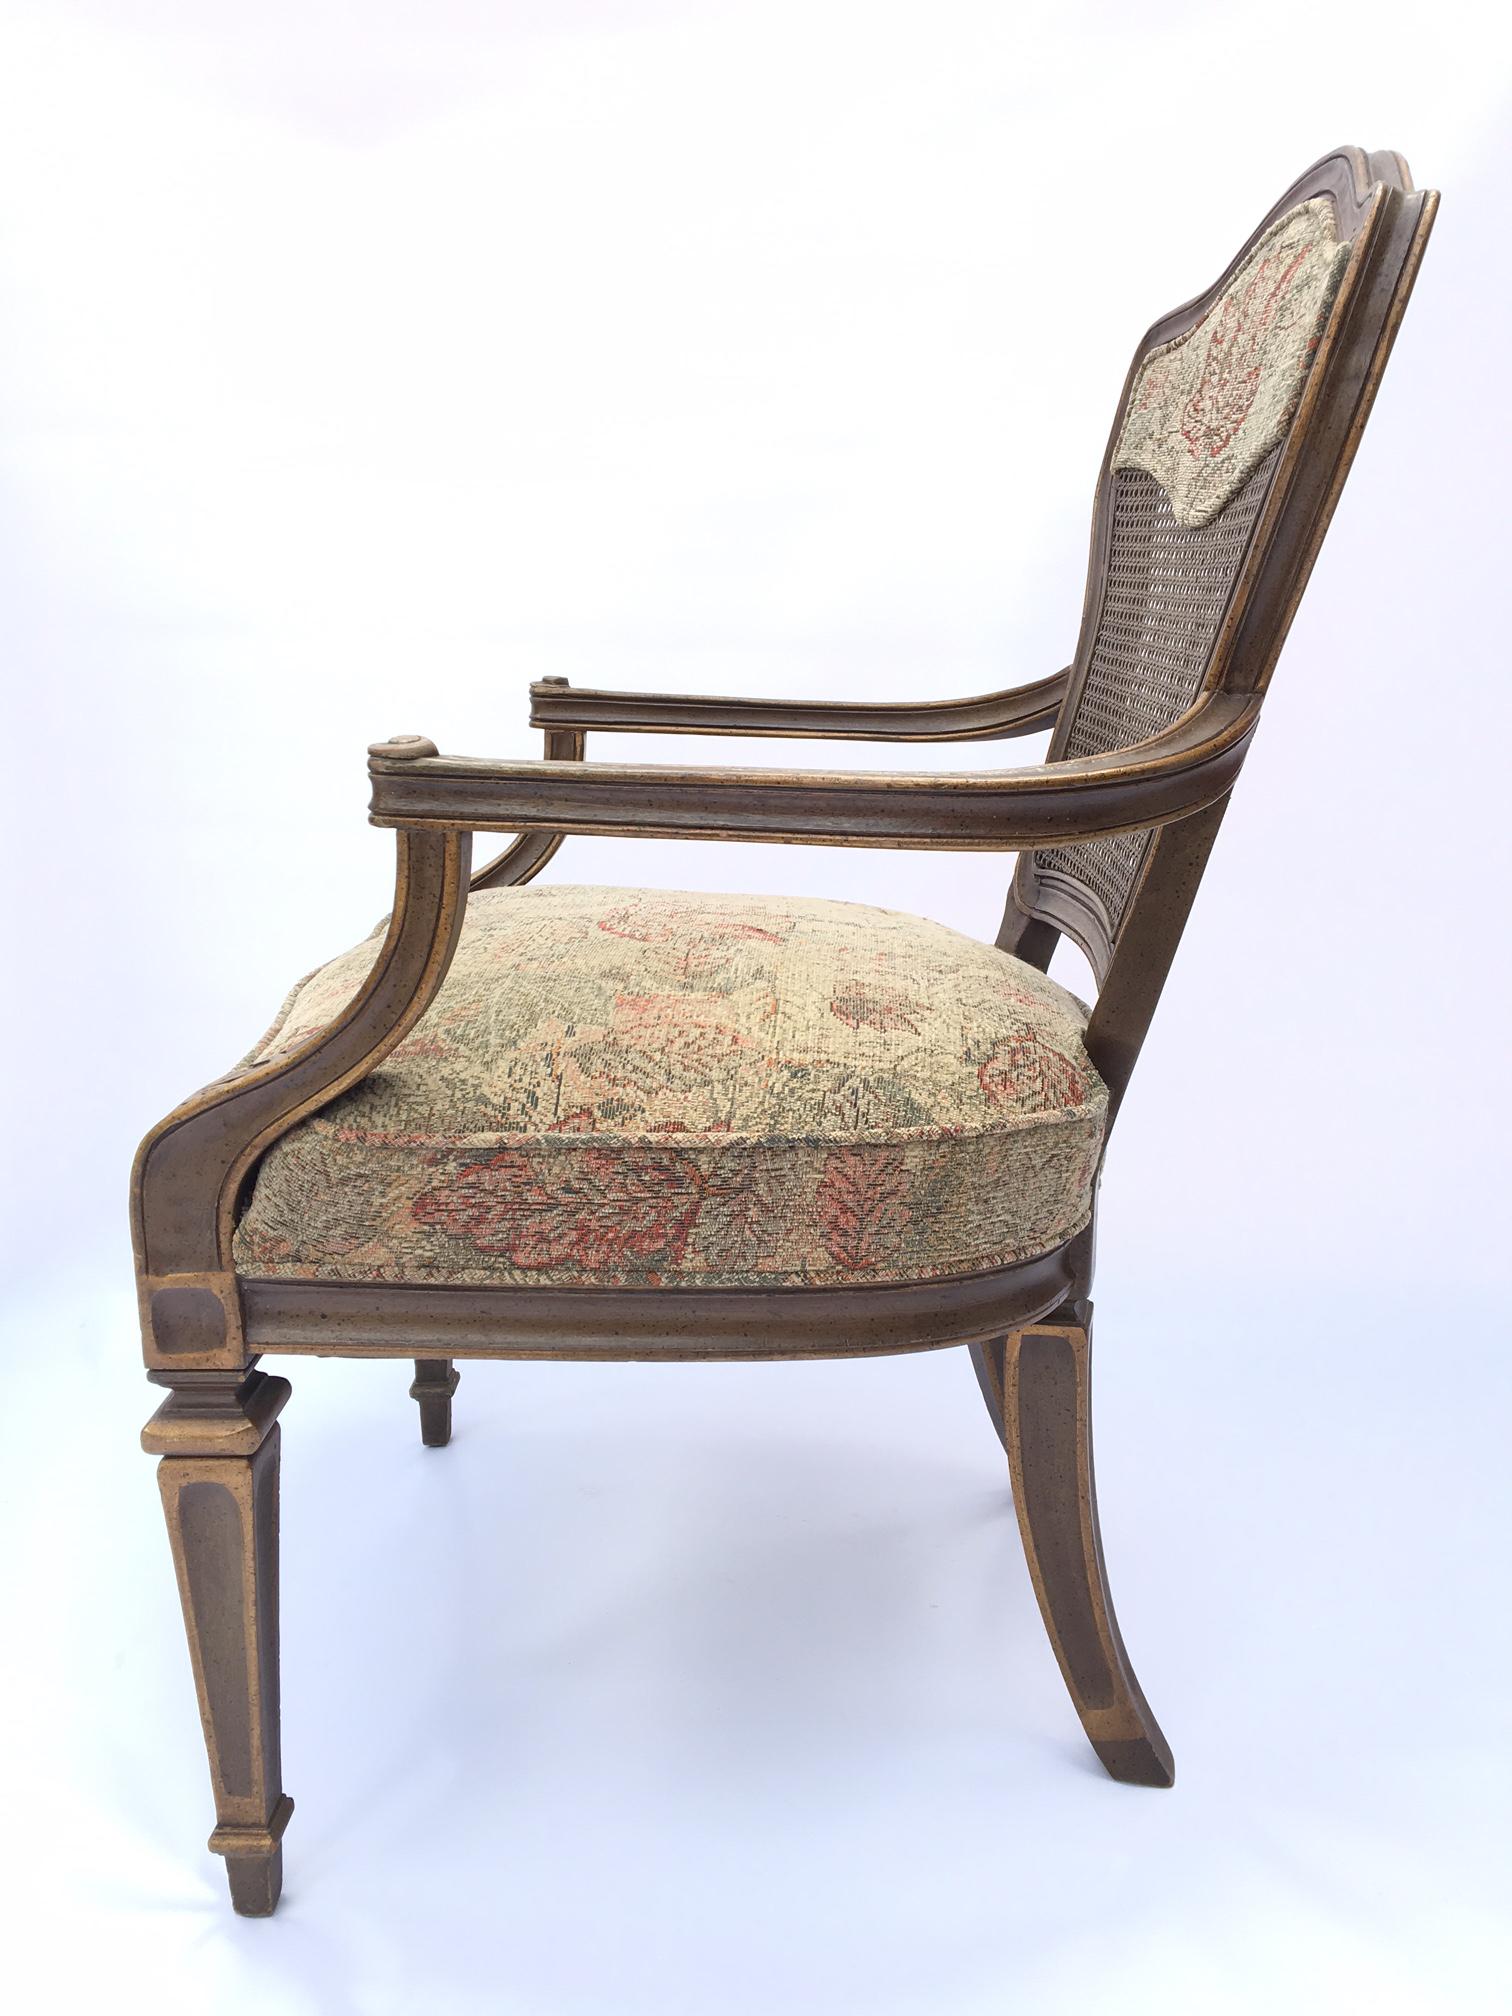 Paire de fauteuils à dossier canné, tapissés de tapisserie florale. Bon état vintage avec usure mineure correspondant à l'âge.